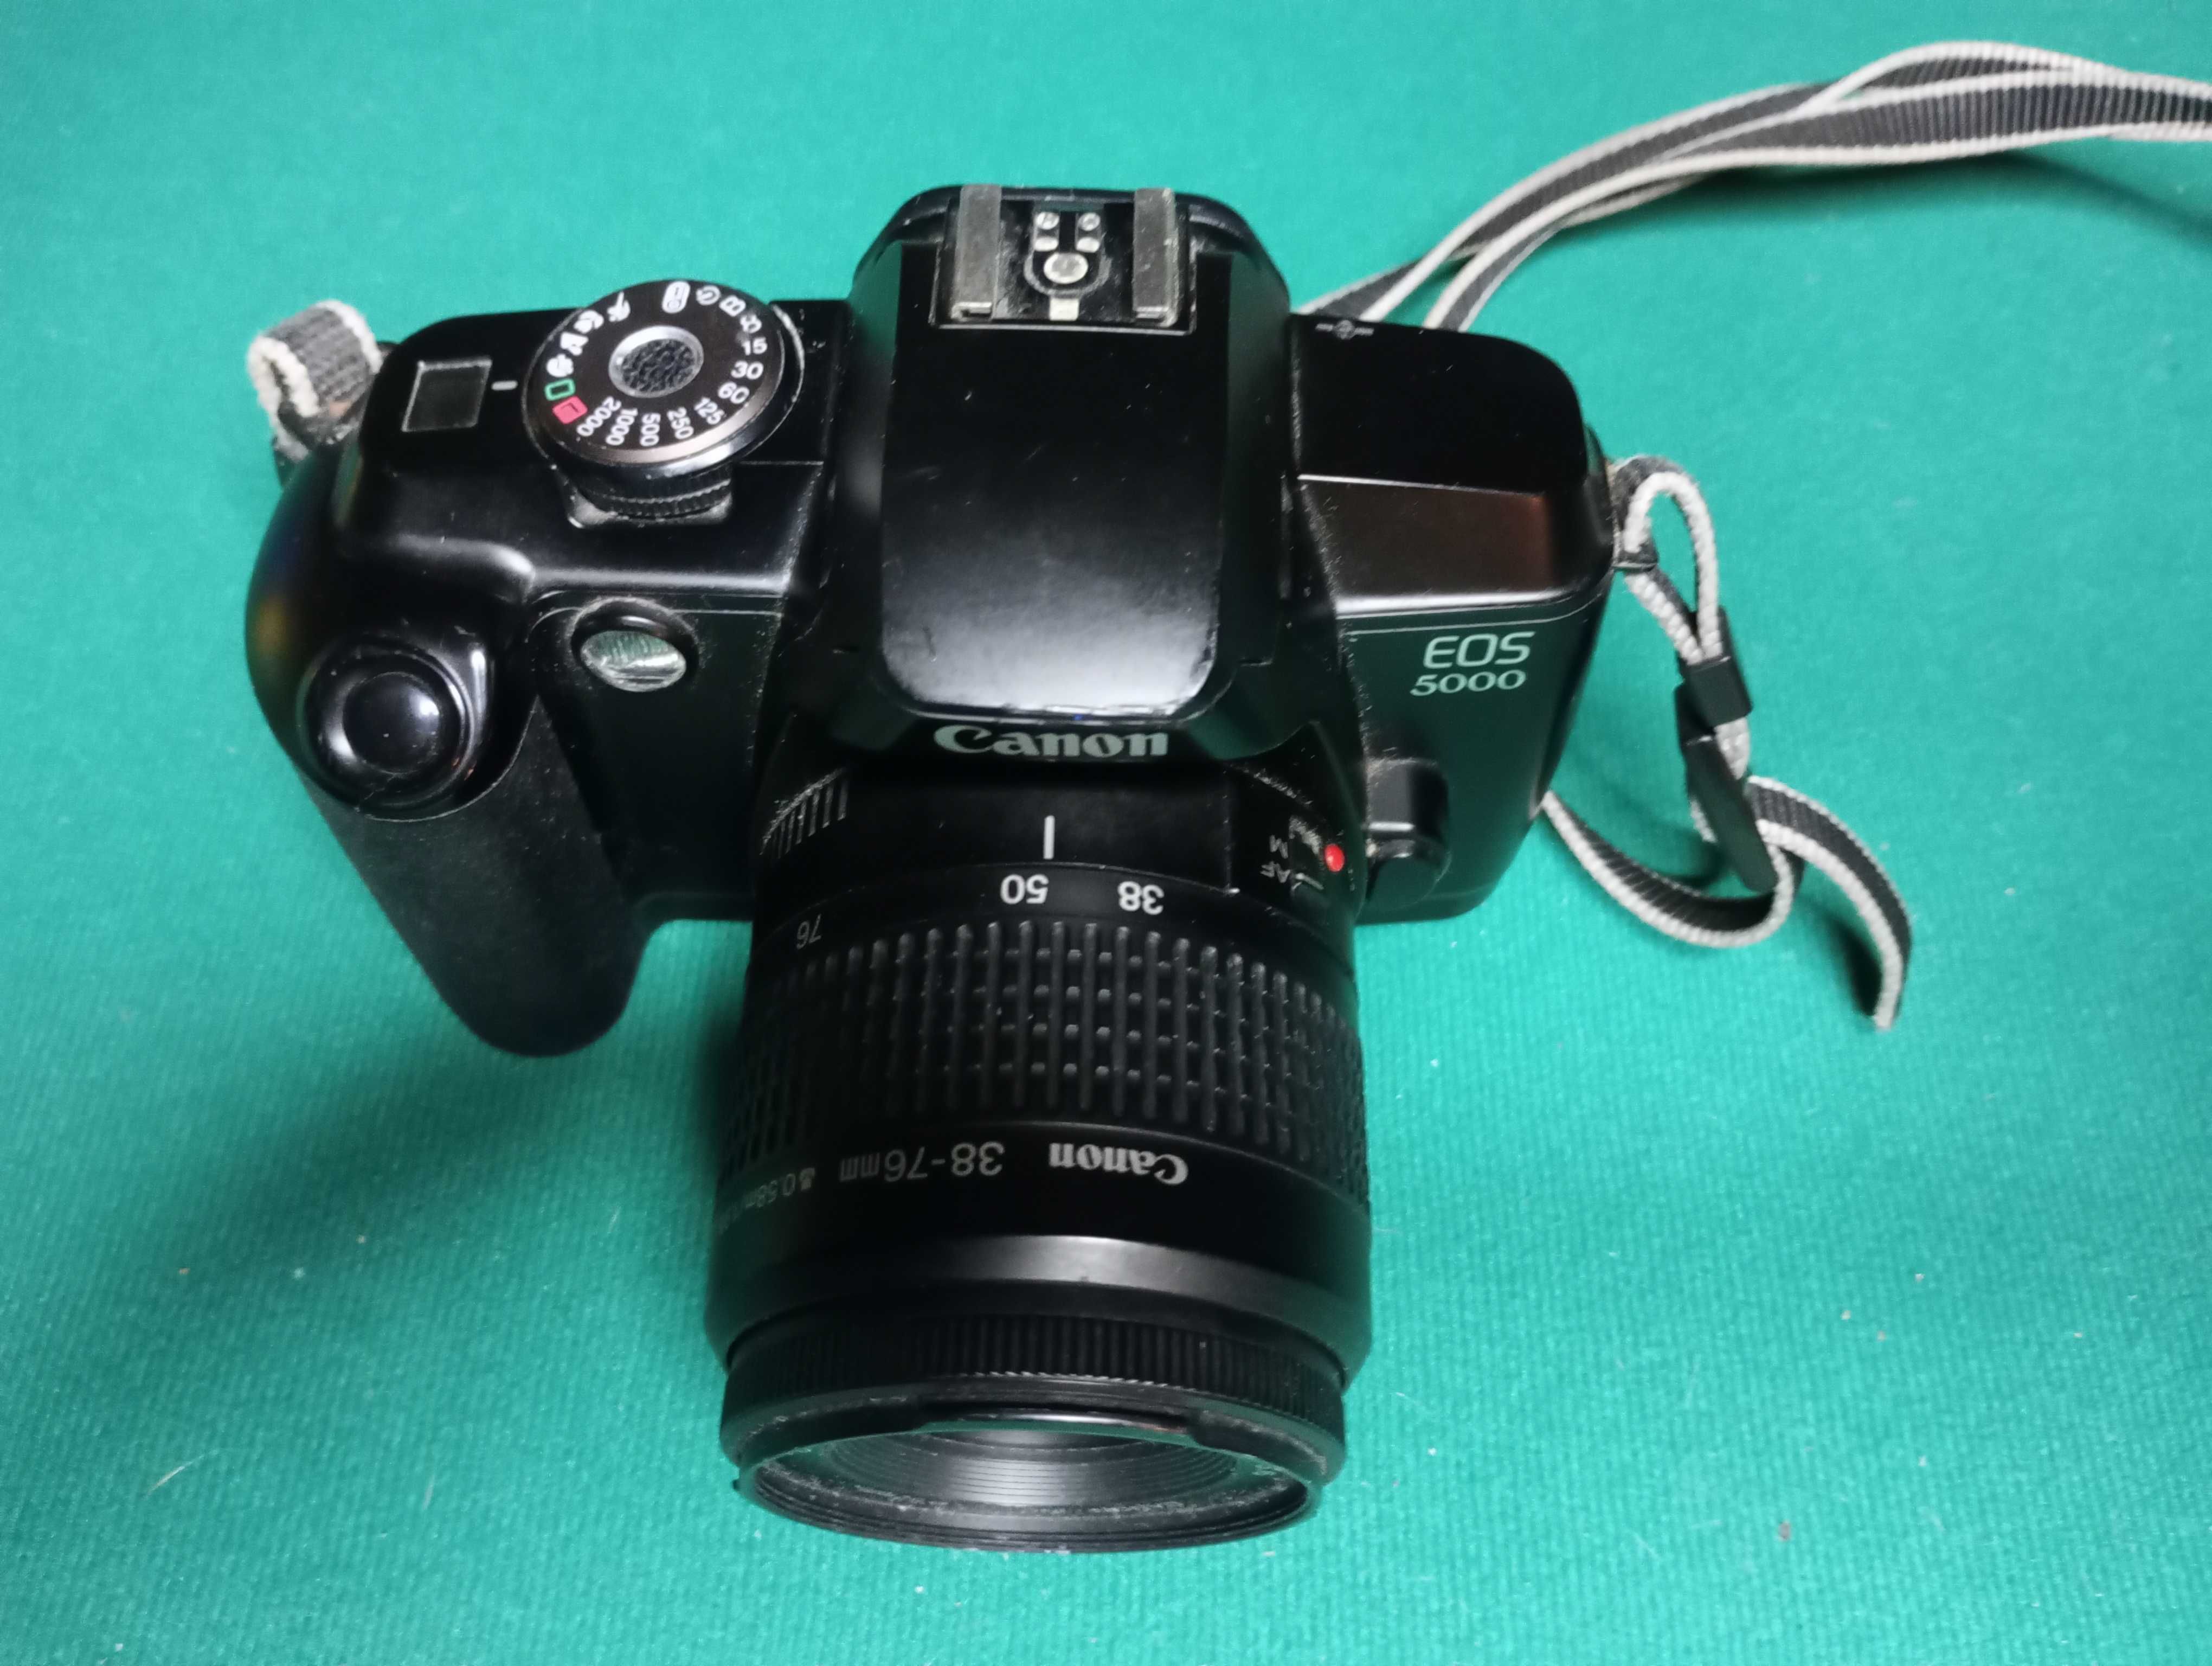 Aparat CANON EOS 5000 obiektyw  Lens EF 38-76mm